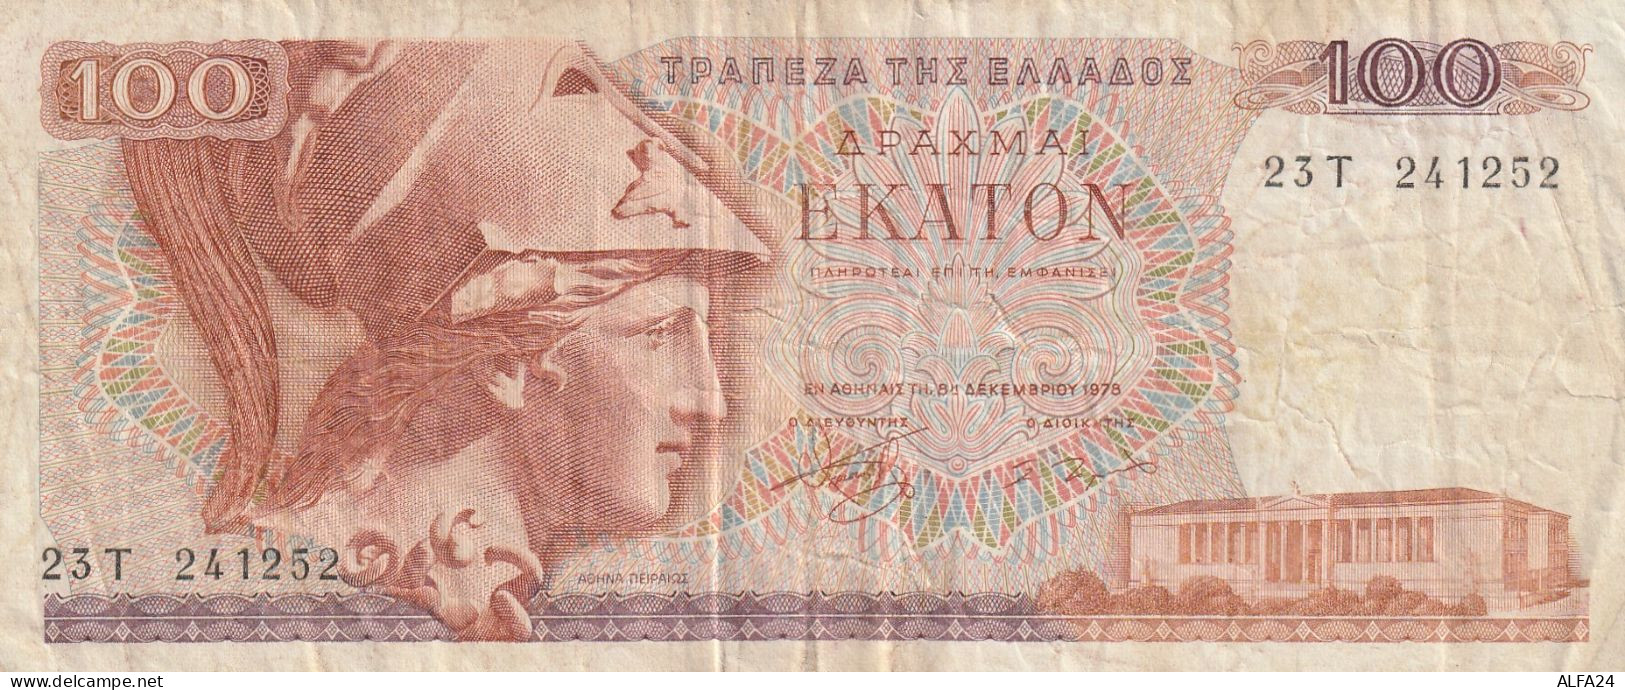 BANCONOTA GRECIA 100 VF  (B_609 - Griekenland